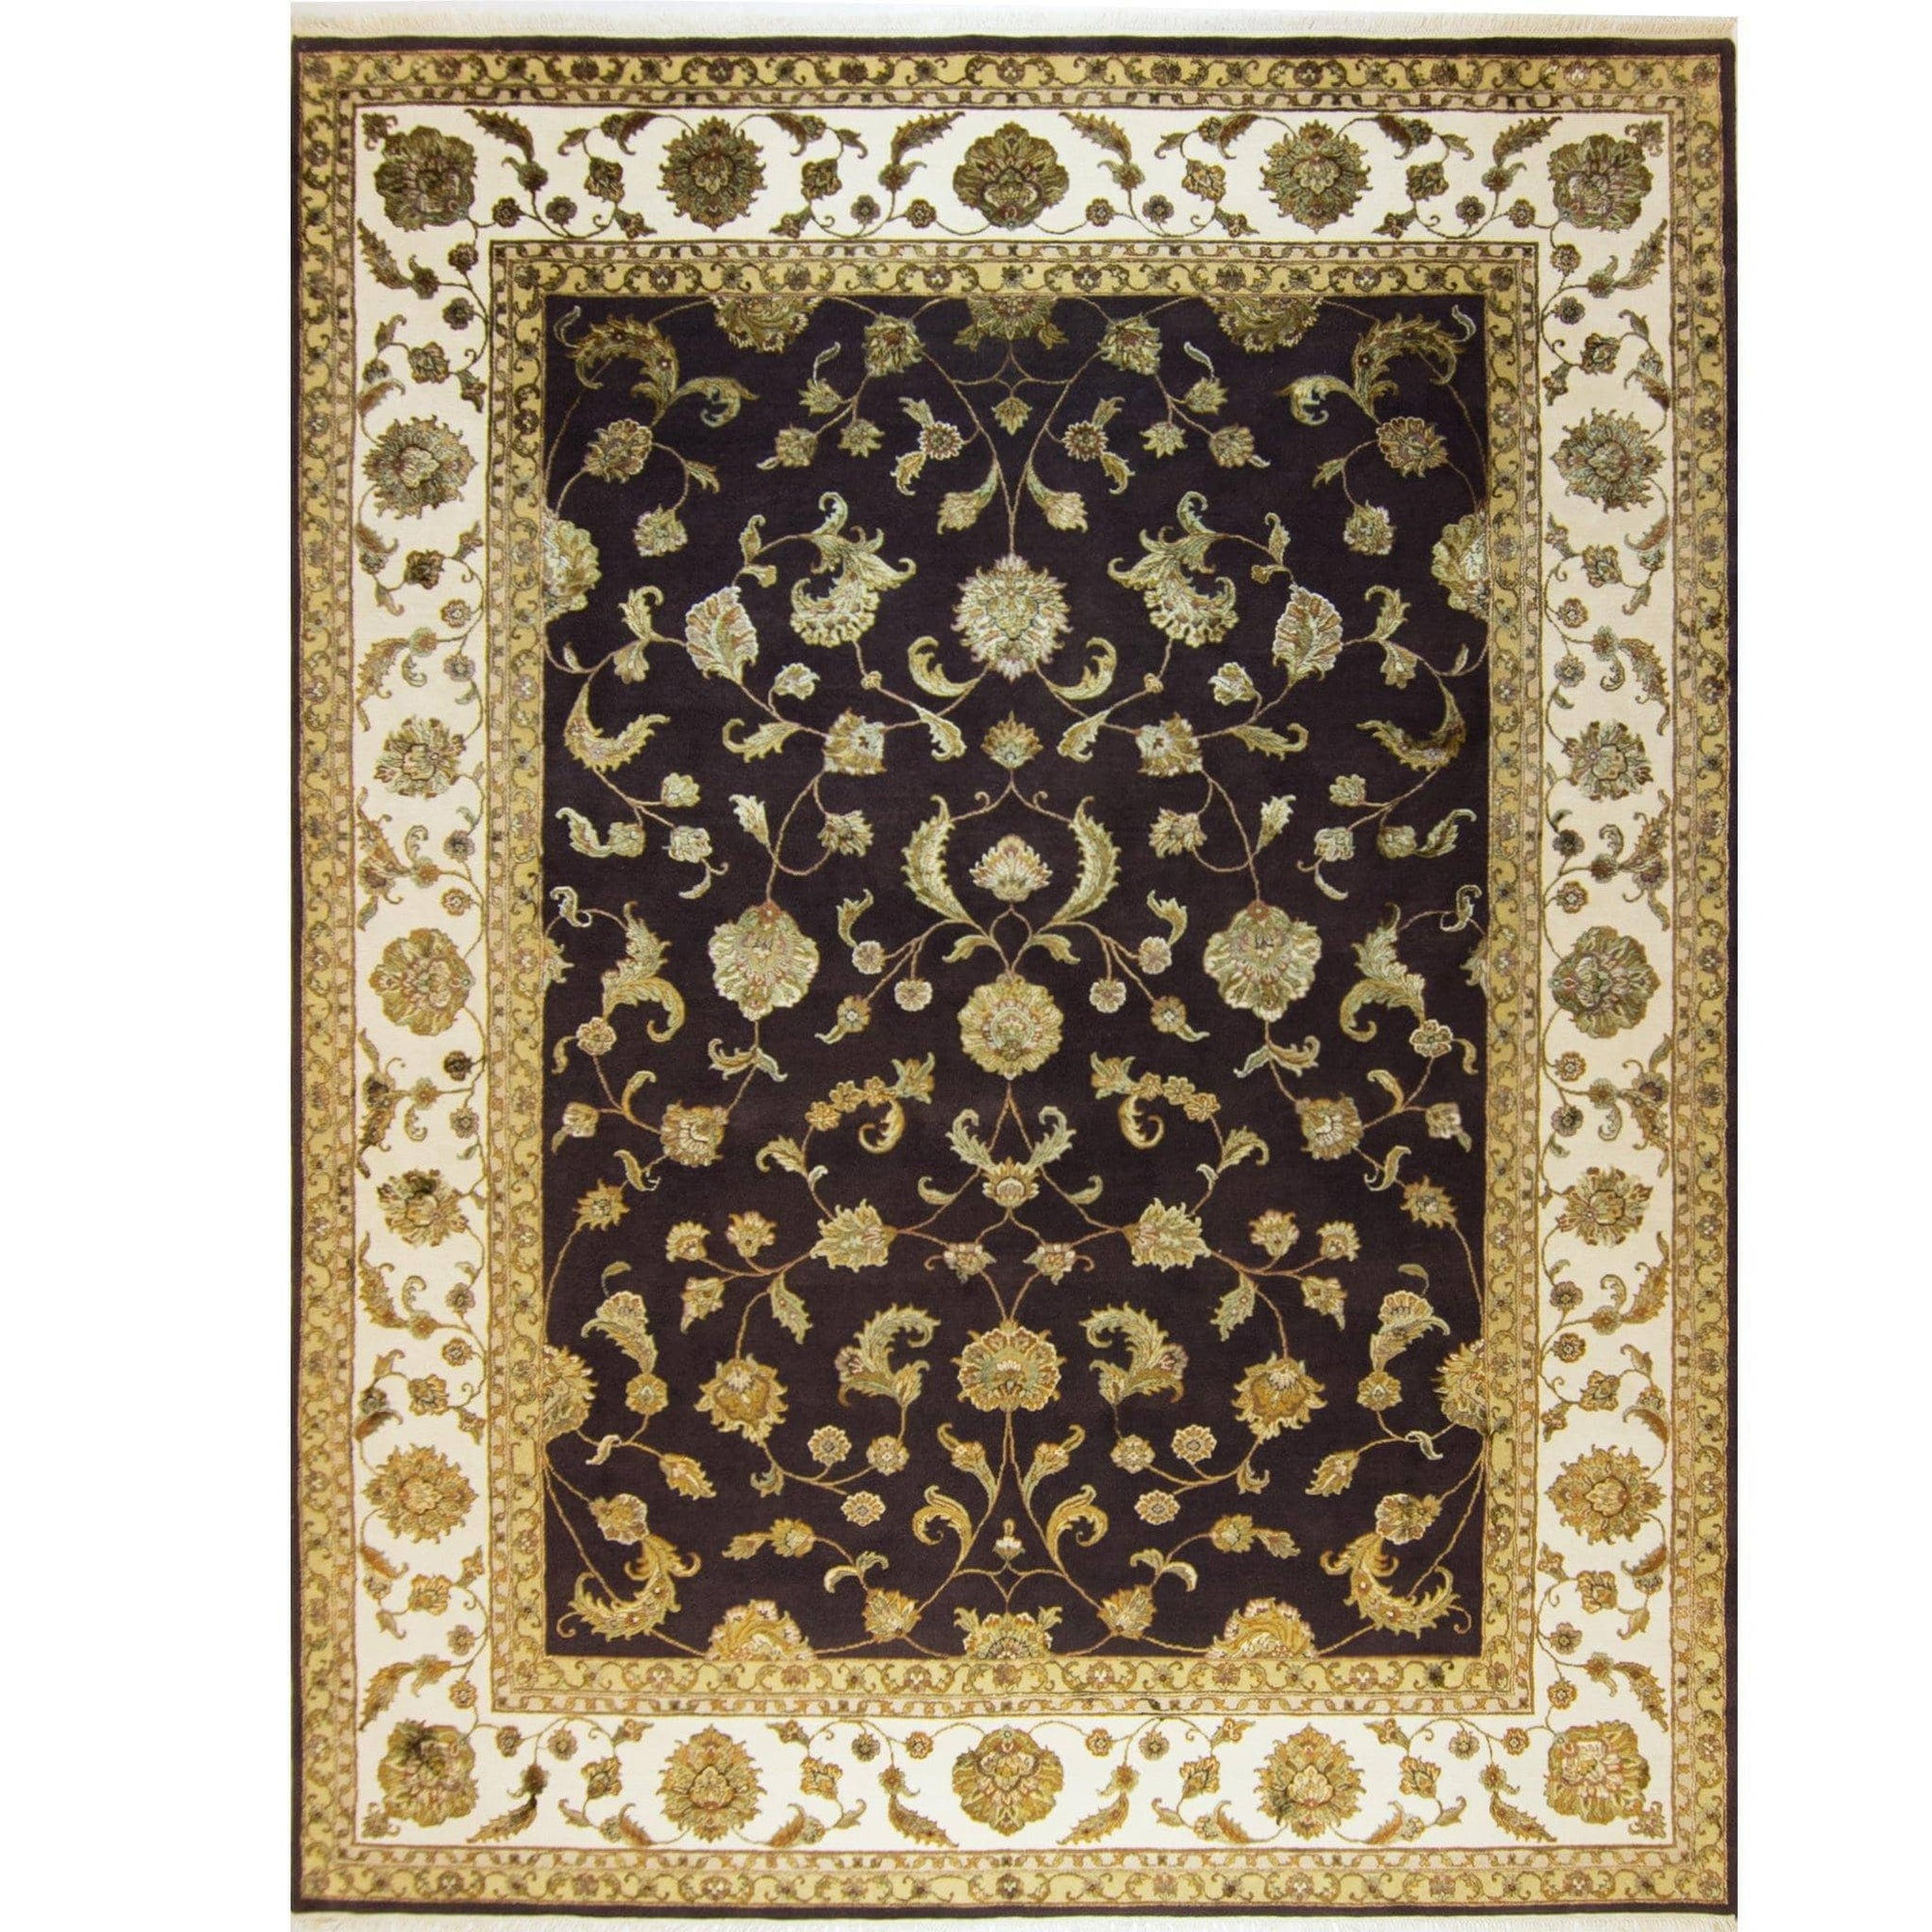 Modern Fine Hand-knotted Wool & Silk Elegance Rug 275cm x 361cm